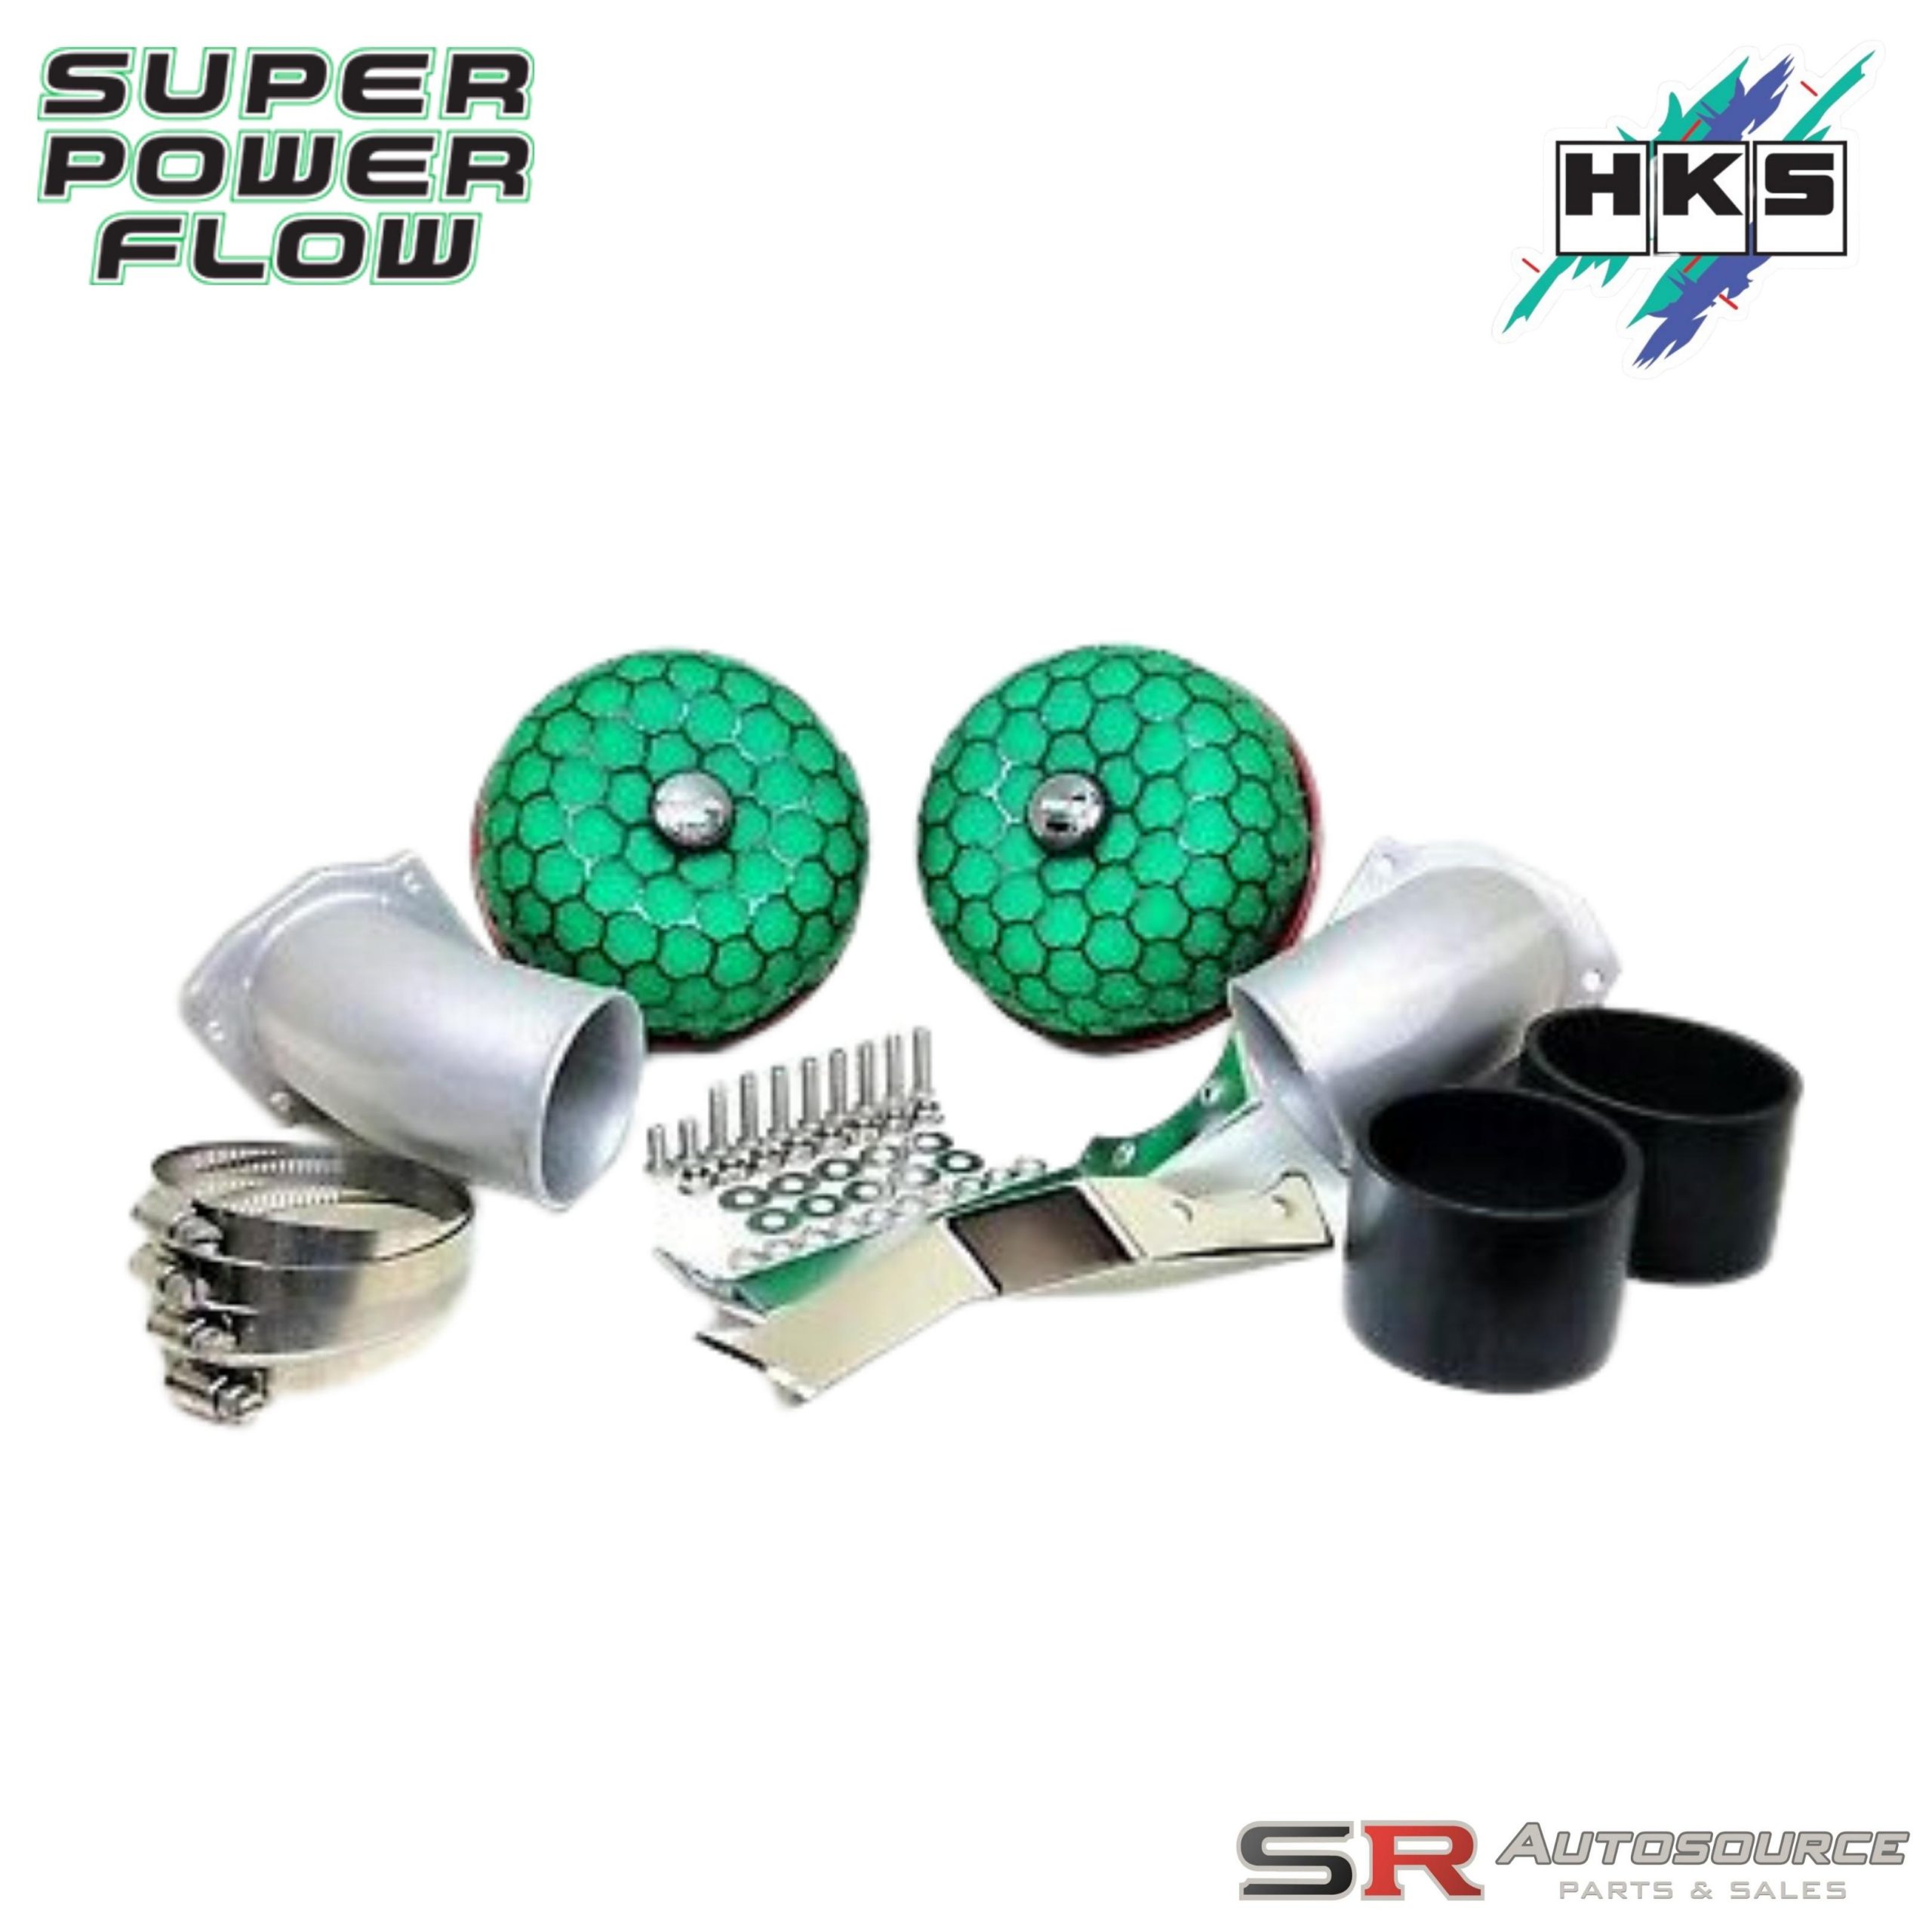 HKS Super Power Flow Intake Kit for Skyline R33 GTR BCNR33 RB26DETT